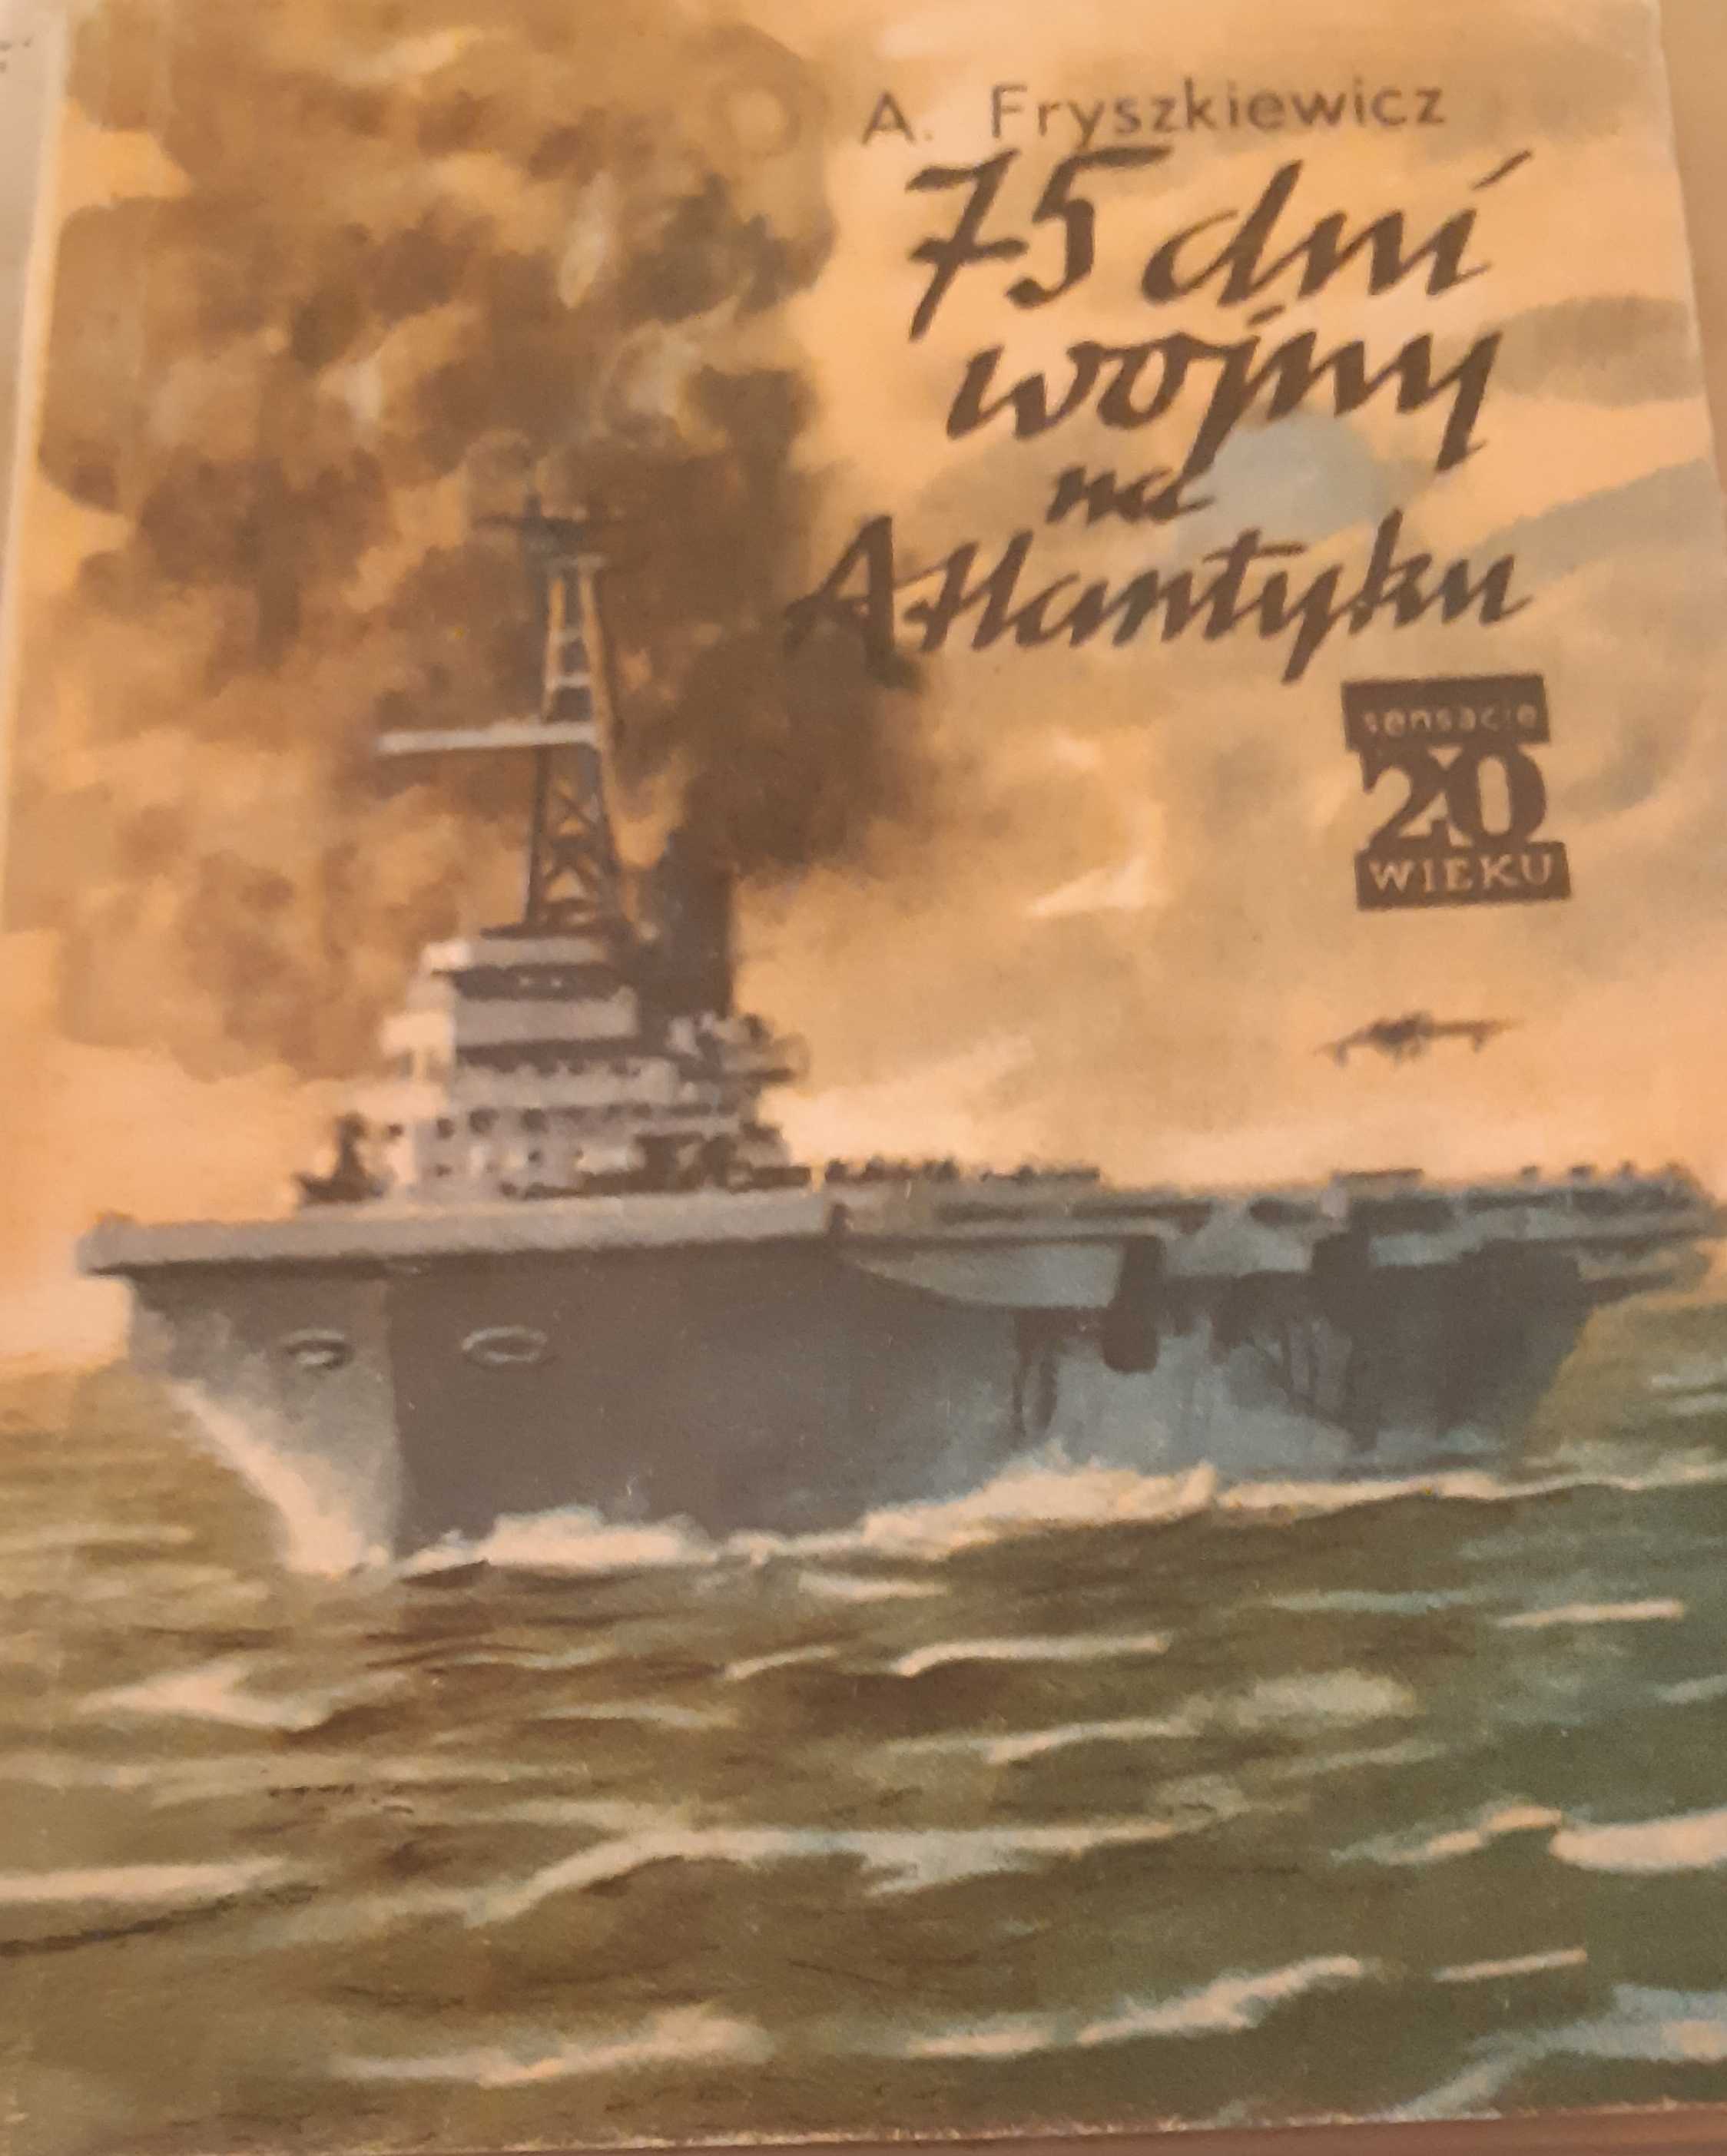 75 dni wojny na Atlantyku